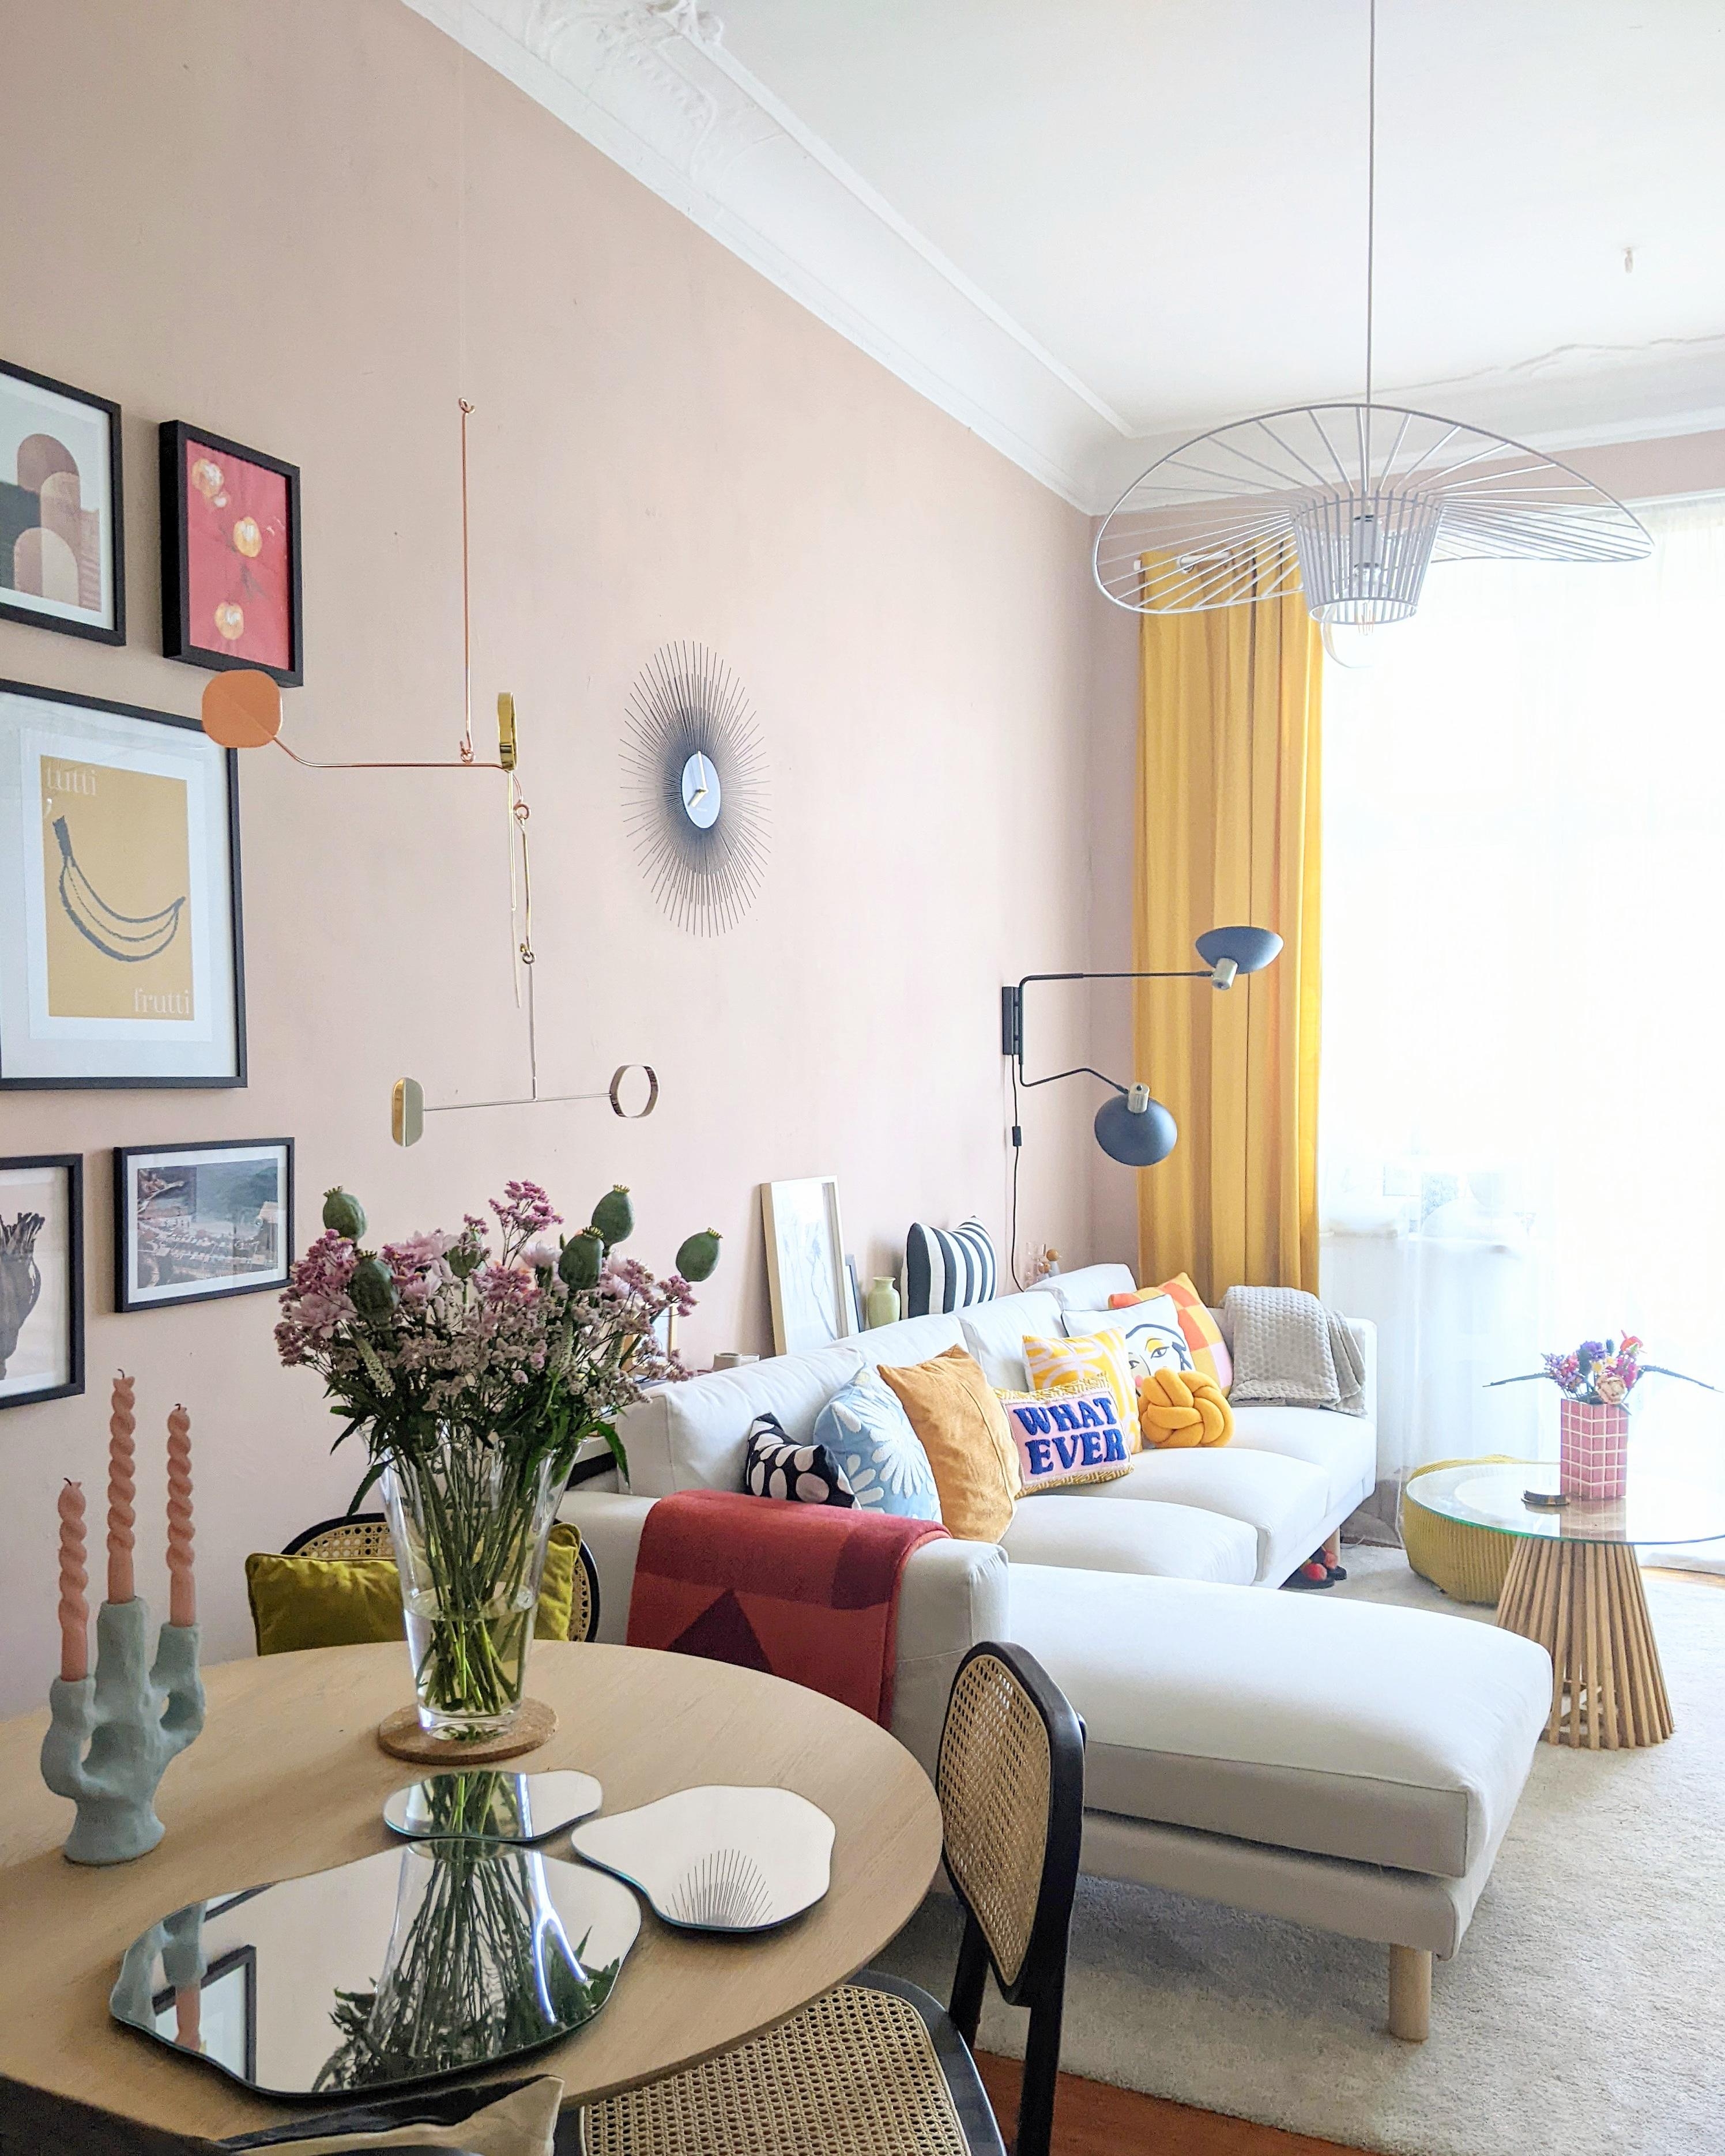 Ich mach' mir die Welt, wie sie mir gefällt. #zuhause #couchstyle #couchliebt #colourfulinterior #livingroom